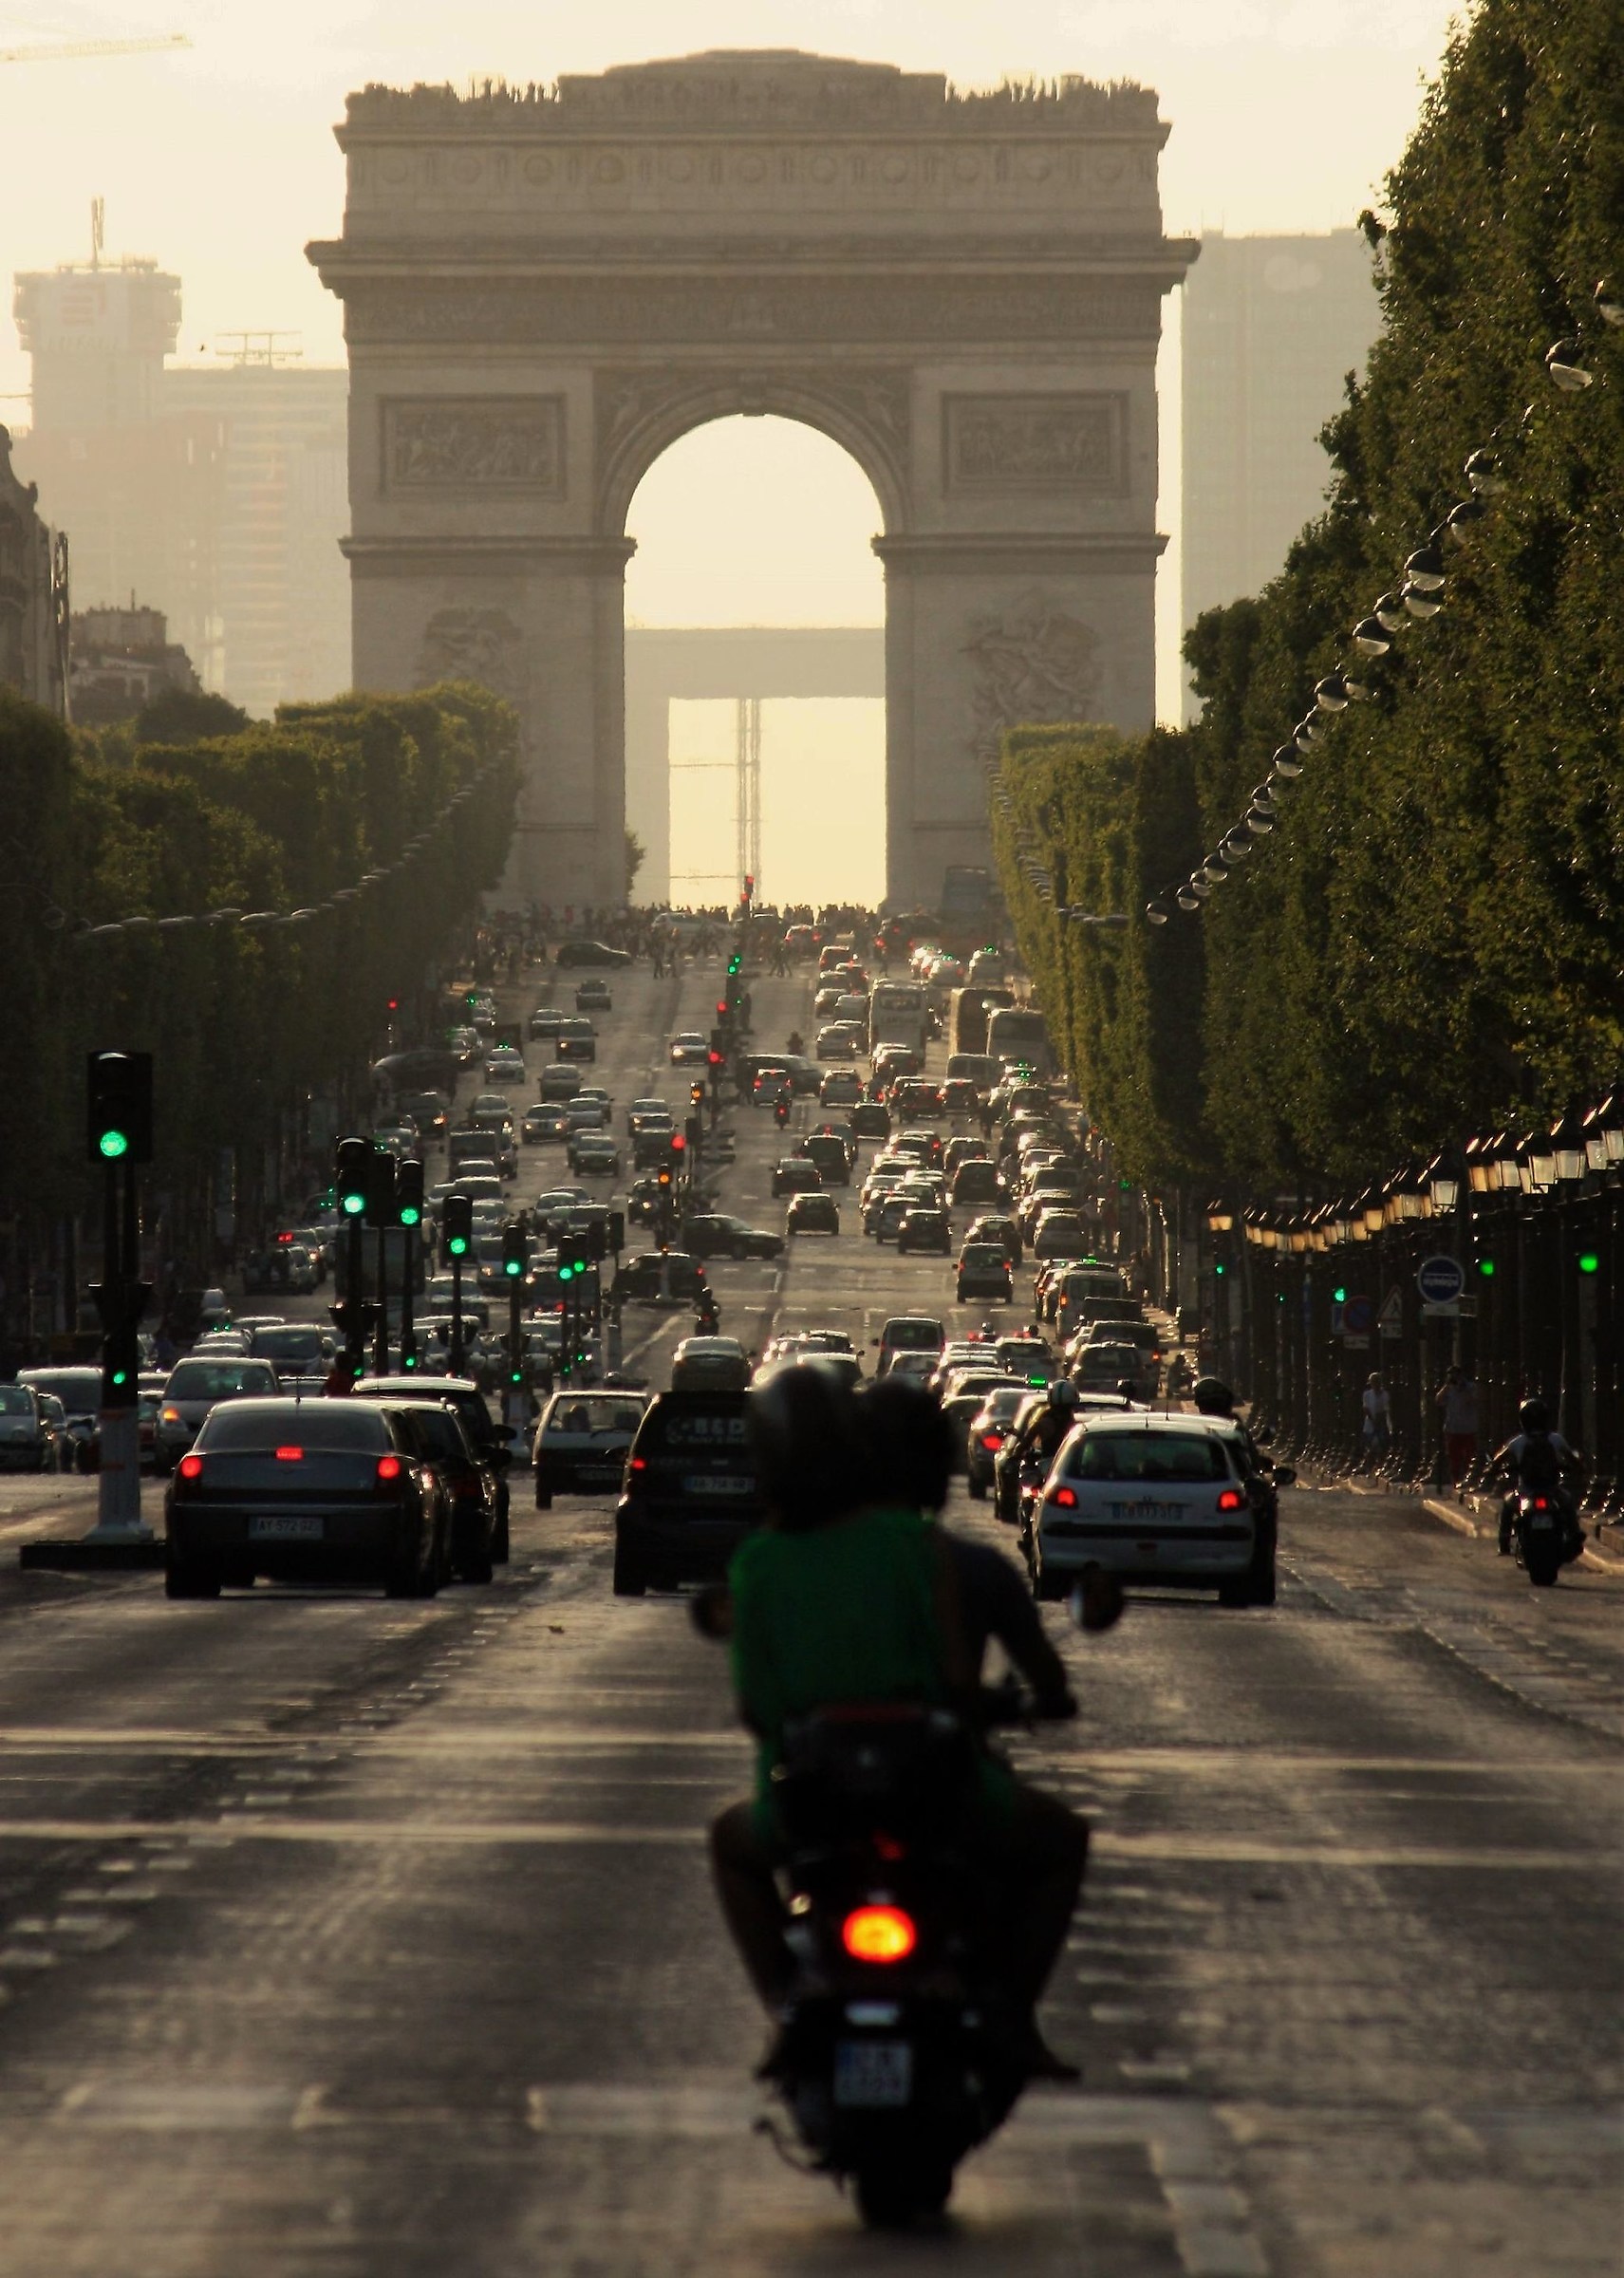 Parisian traffic lights...